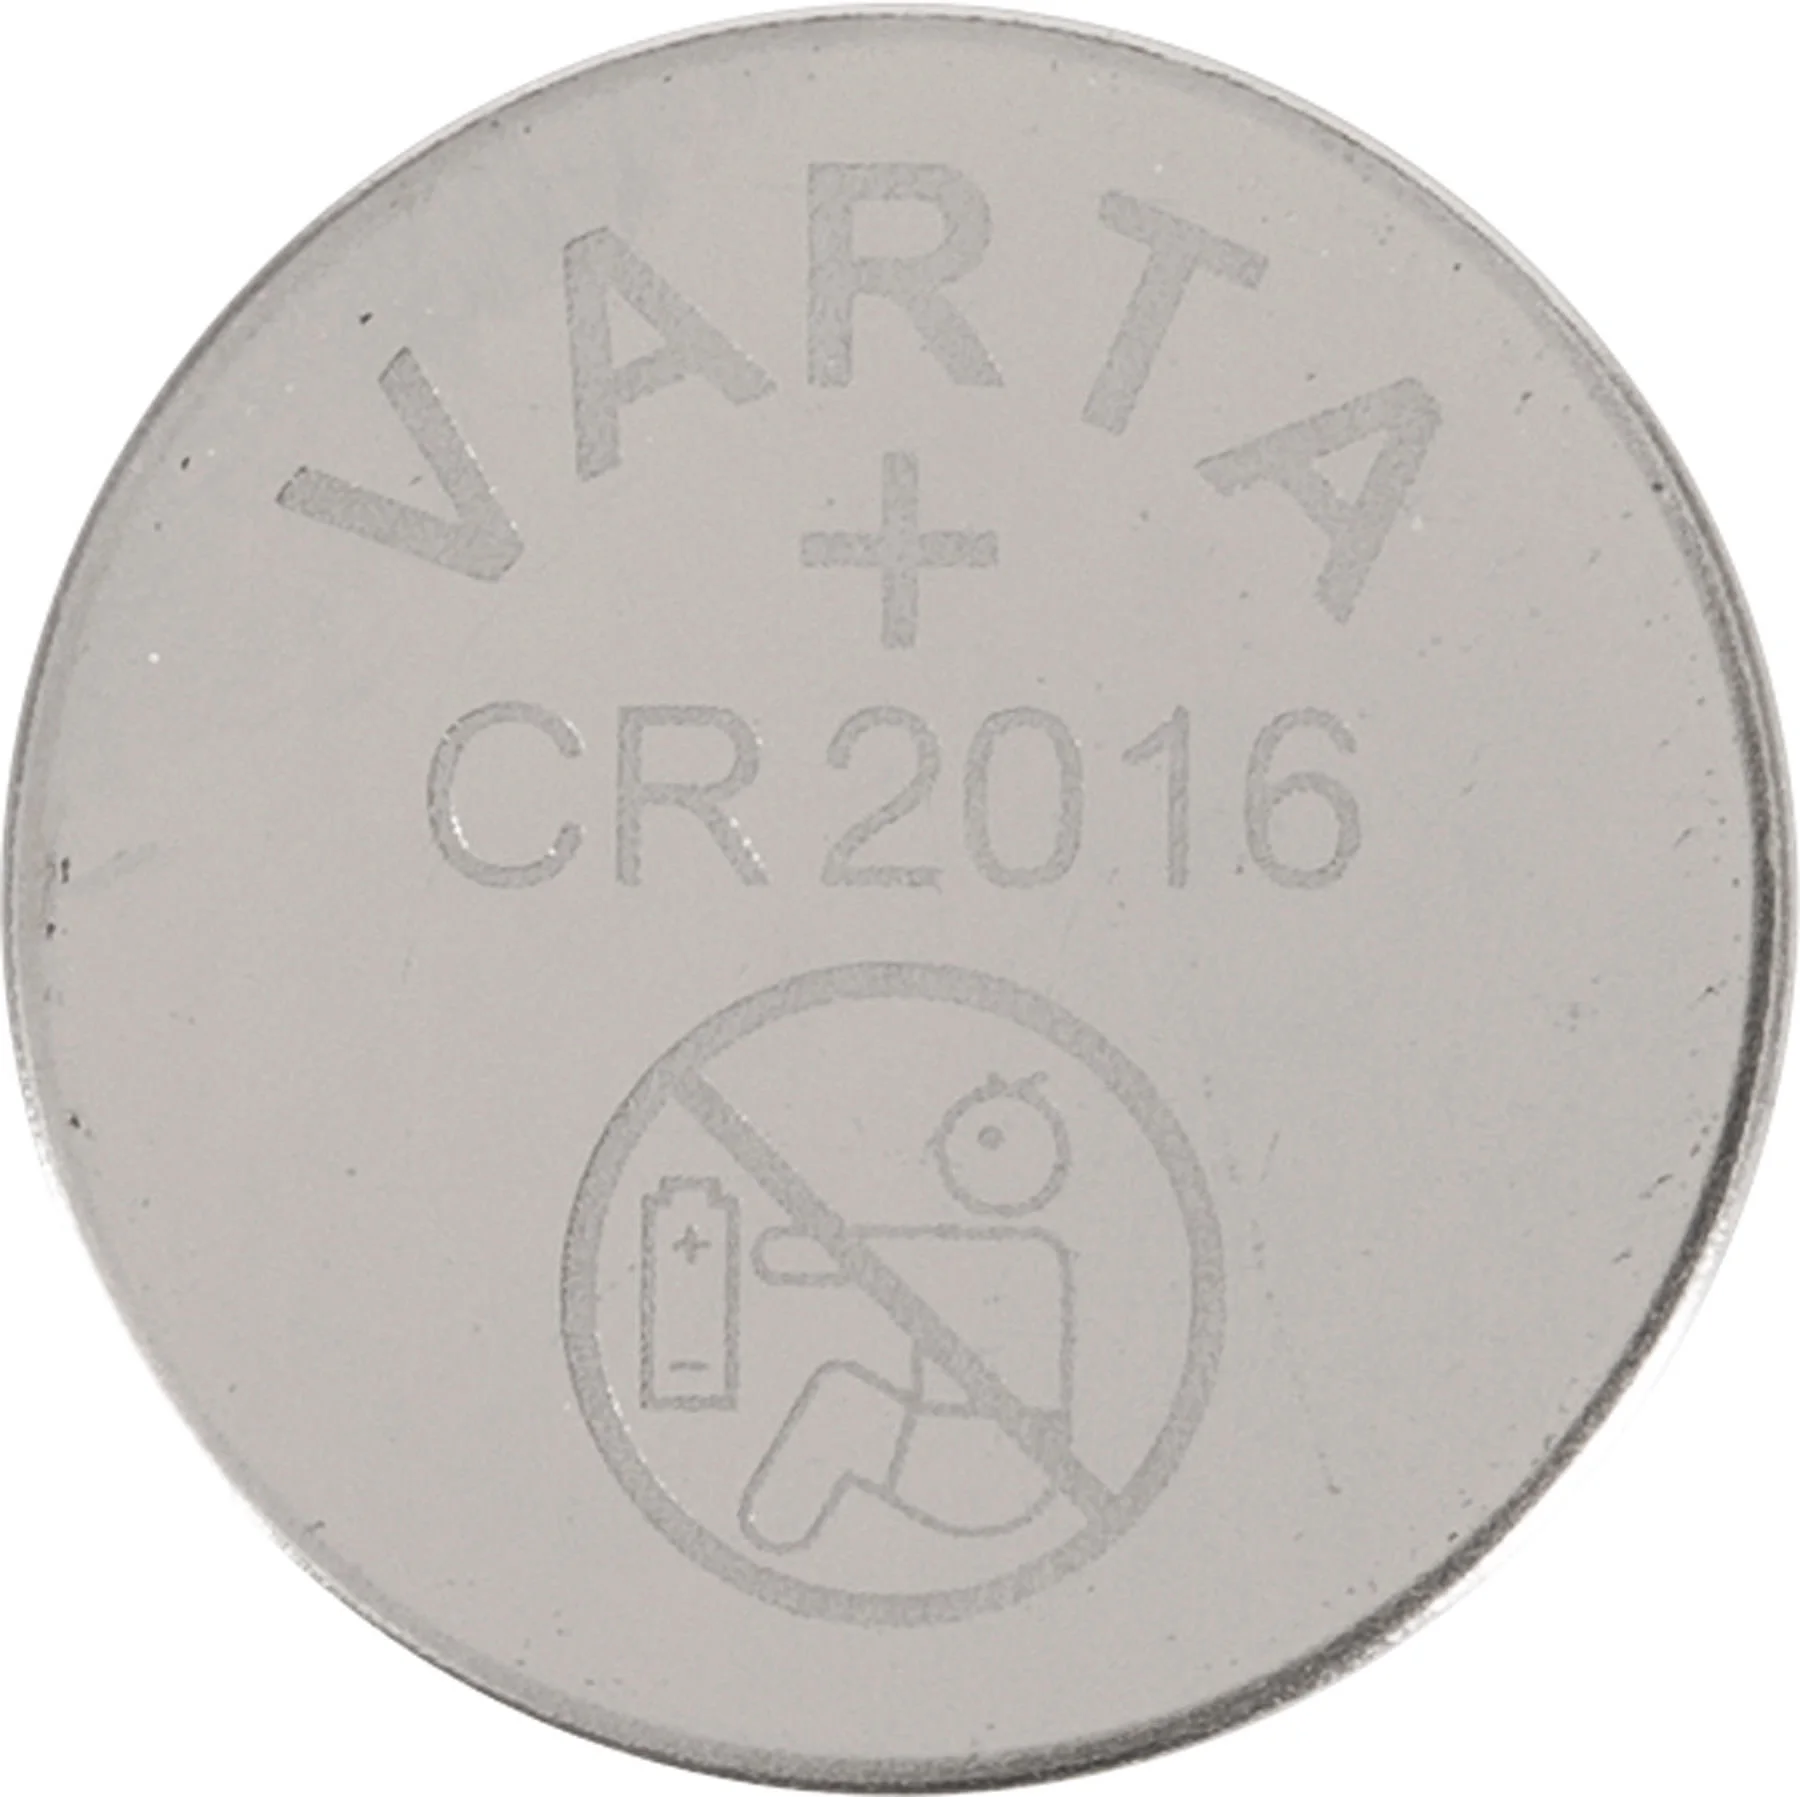 VARTA CR 2016 BATTERY